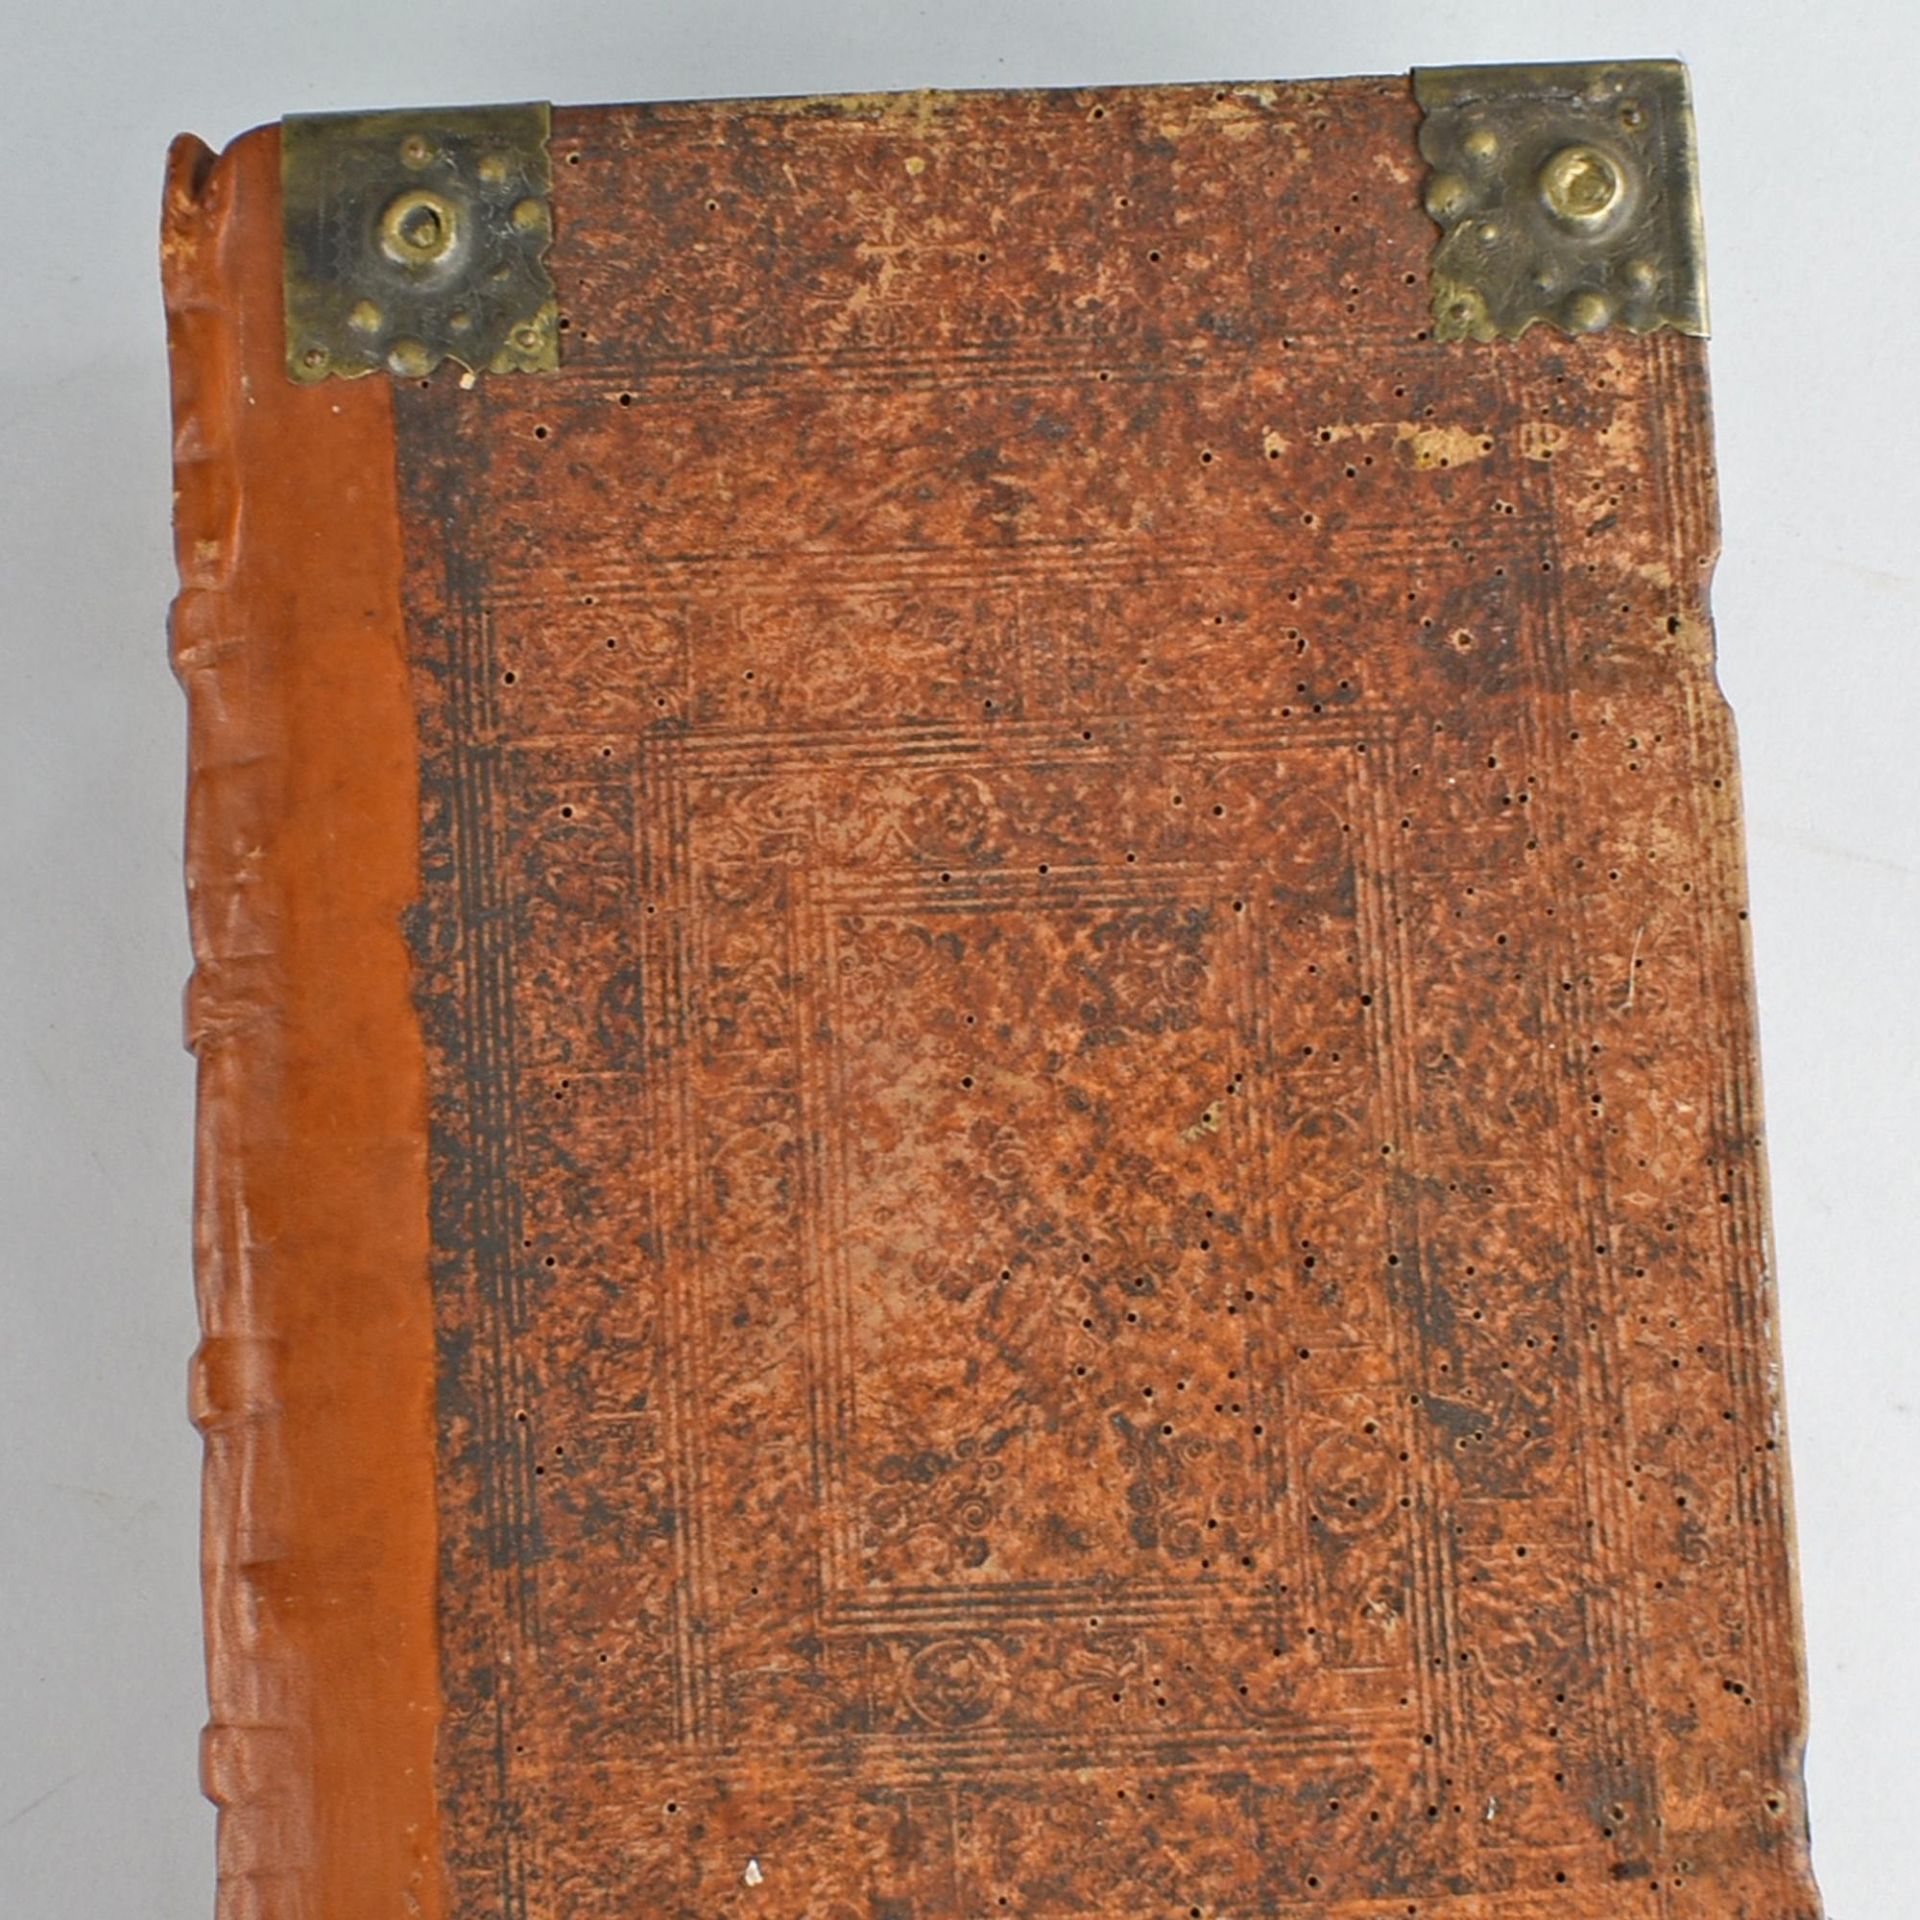 Historische Bibel 18. Jh. großformatige illustrierte Bibelausgabe, Holzdeckel mit Pergament,